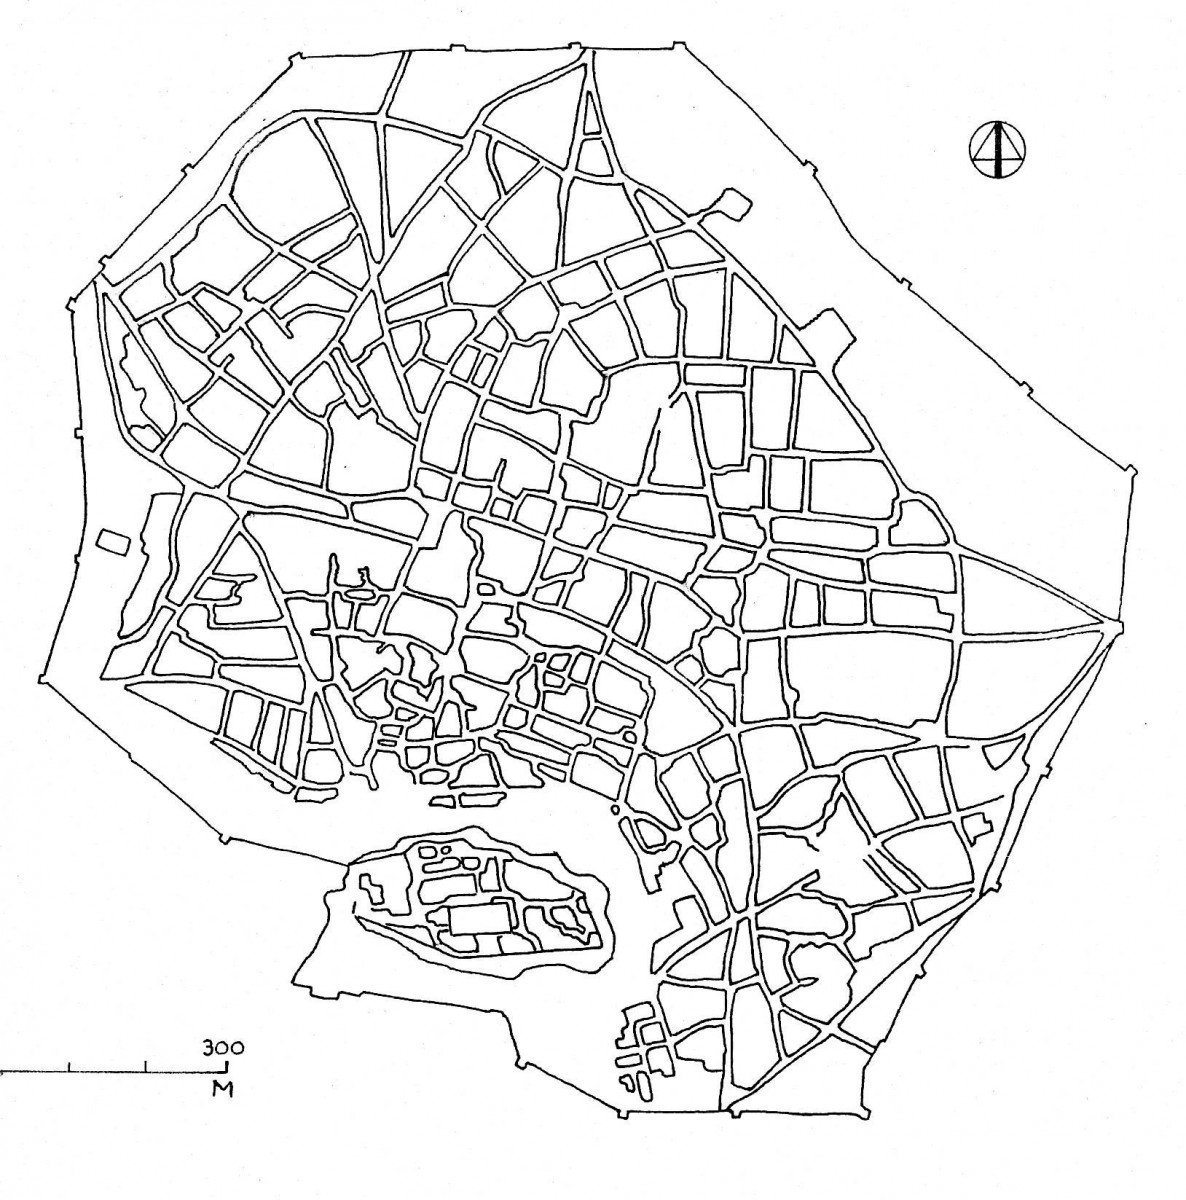 Εικ. 1. Η Αθήνα κατά τον 18ο αιώνα και στις αρχές του 19ου, περιτριγυρισμένη από το τείχος της. Όλα τα δημόσια κτήρια ήταν συγκεντρωμένα στην πυκνοκατοικημένη ζώνη αμέσως στα βόρεια της Ακρόπολης (σχέδιο Δ. Ρουμπιέν, σύμφωνα με διάφορες ιστορικές πηγές).